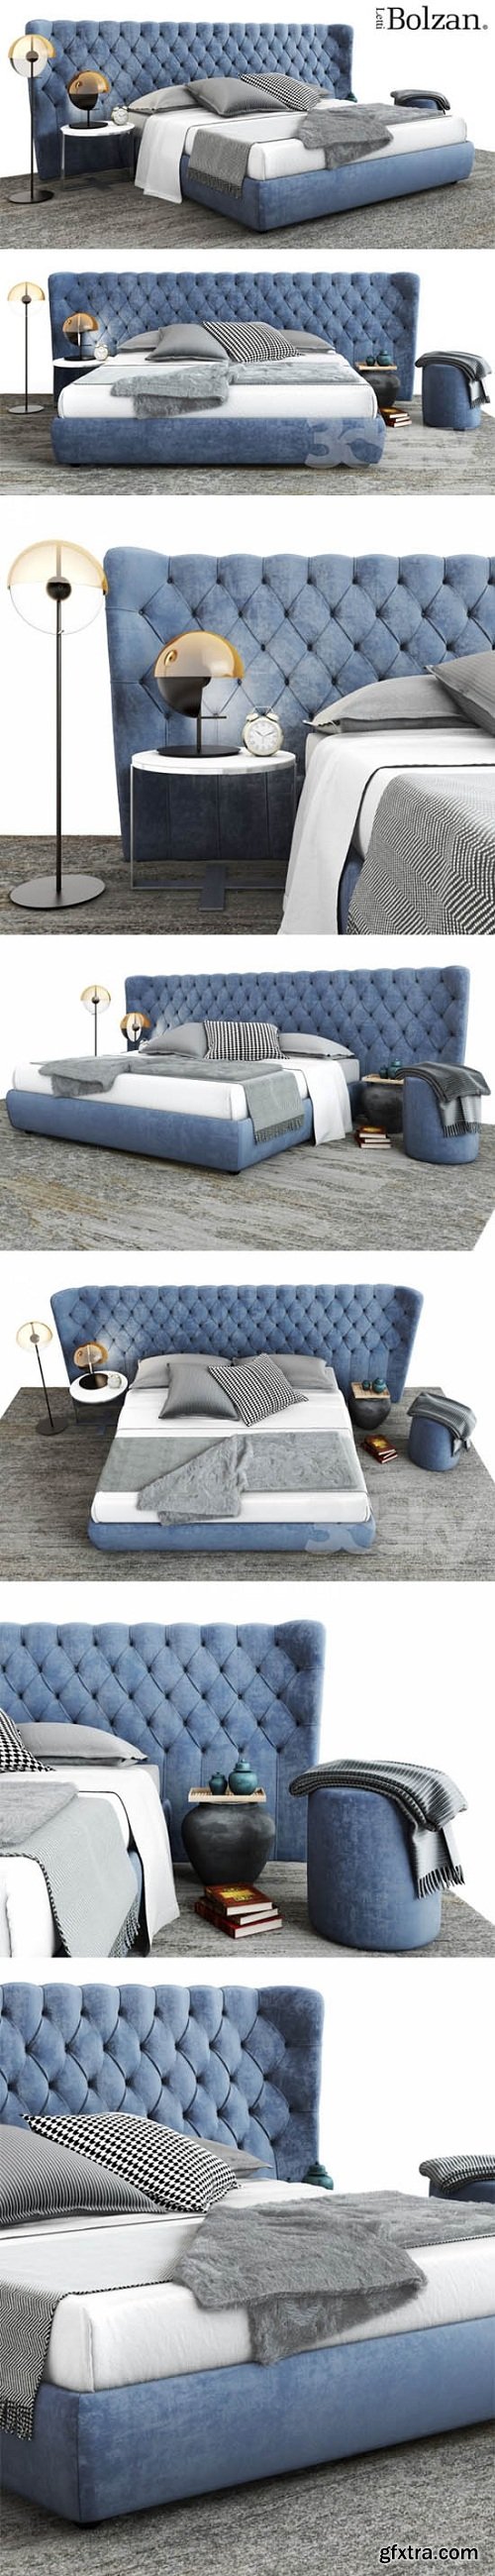 Bolzan Letti Selene Extra Large Bed